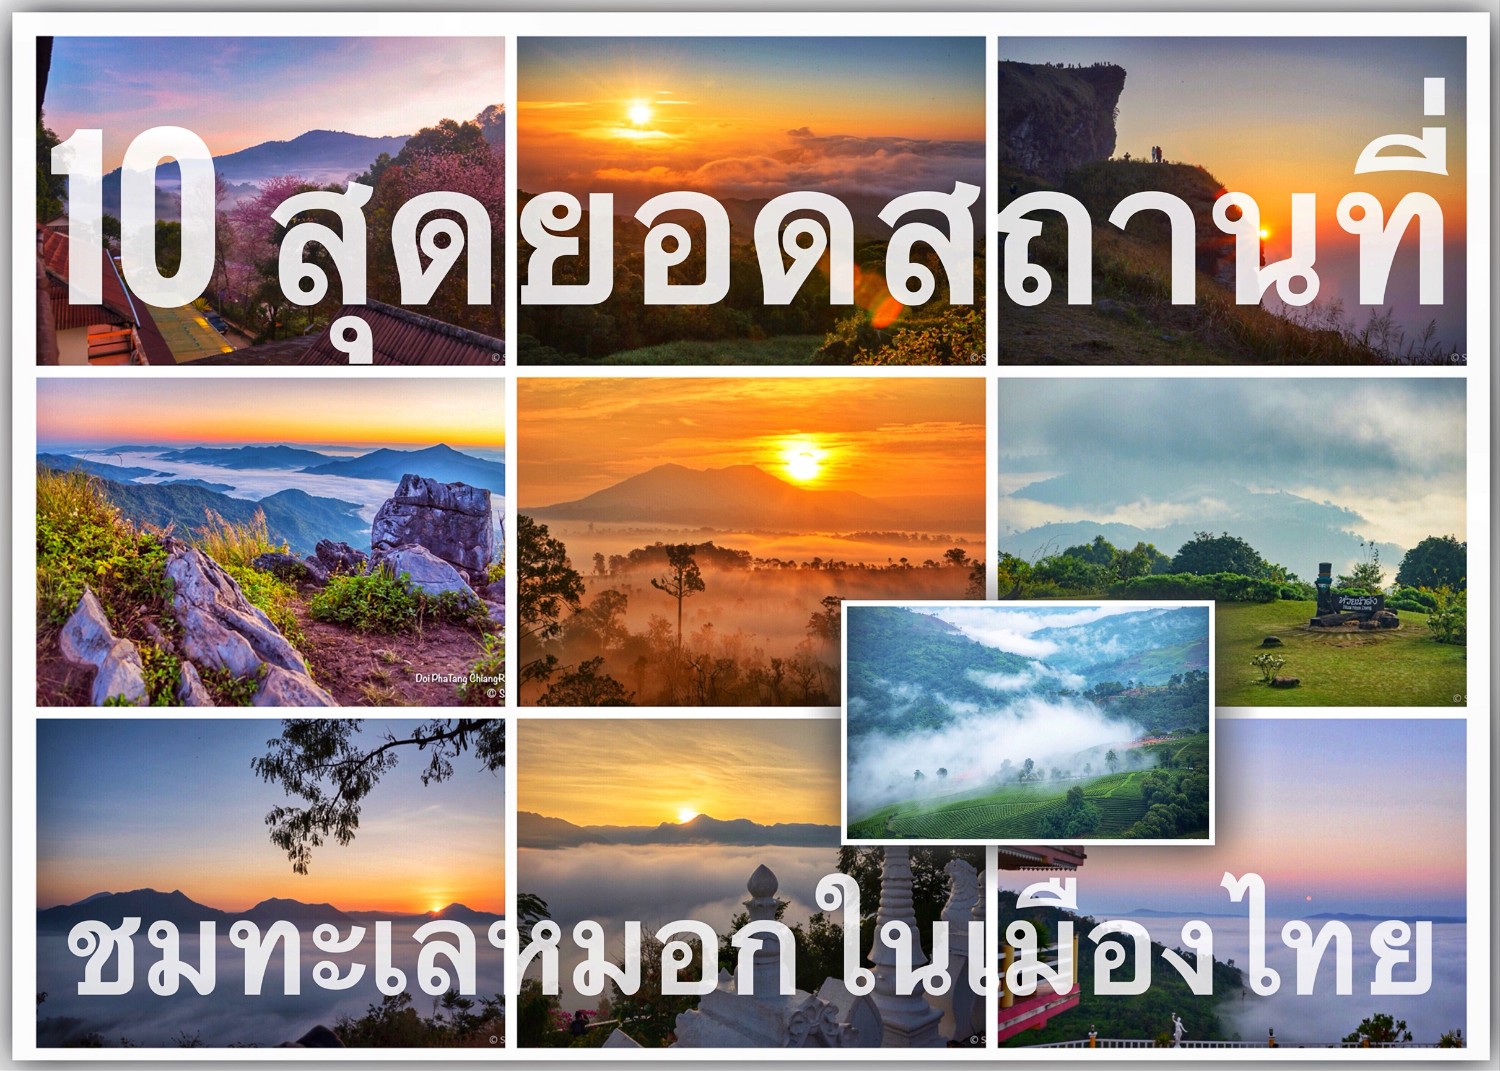 10 สุดยอดทะเลหมอกในเมืองไทย - Pantip